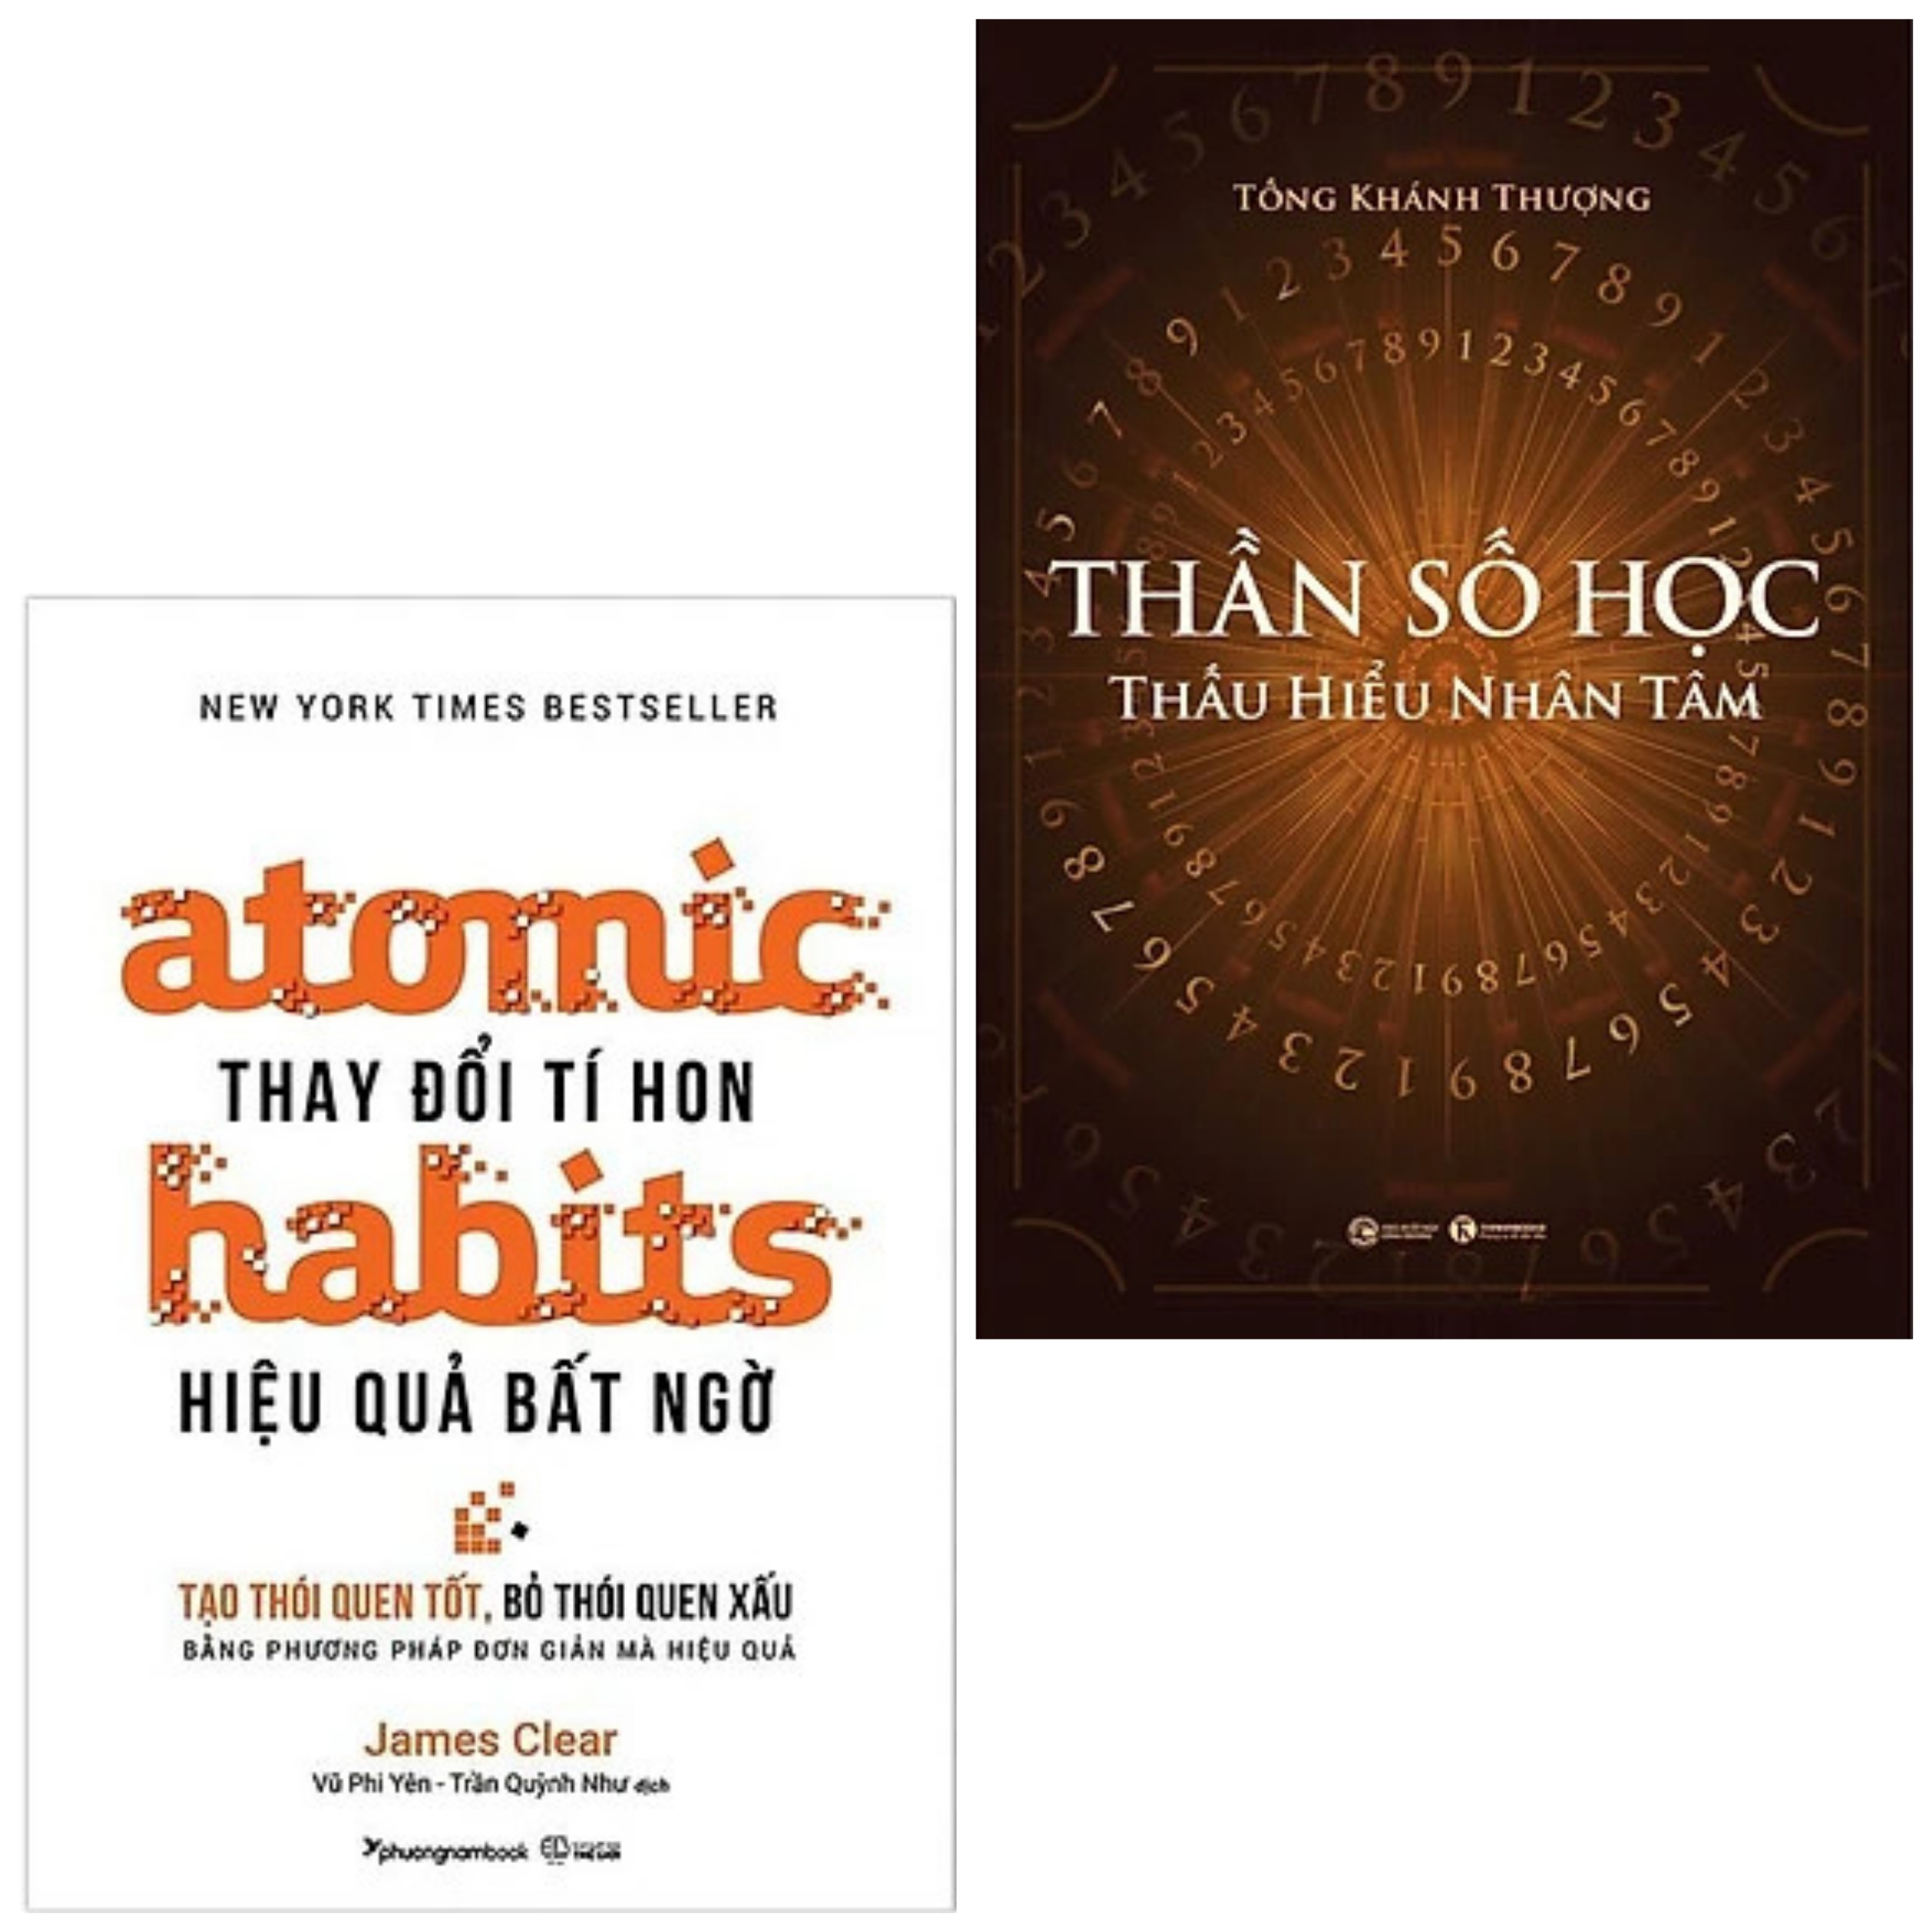 Combo 2 cuốn: Atomic Habits - Thay Đổi Tí Hon, Hiệu Quả Bất Ngờ ( Những Thay Đổi Nhỏ Tạo Nên Thành Công Lớn + Thần Số Học: Thấu Hiểu Nhân Tâm/ Tặng kèm Bookmark)